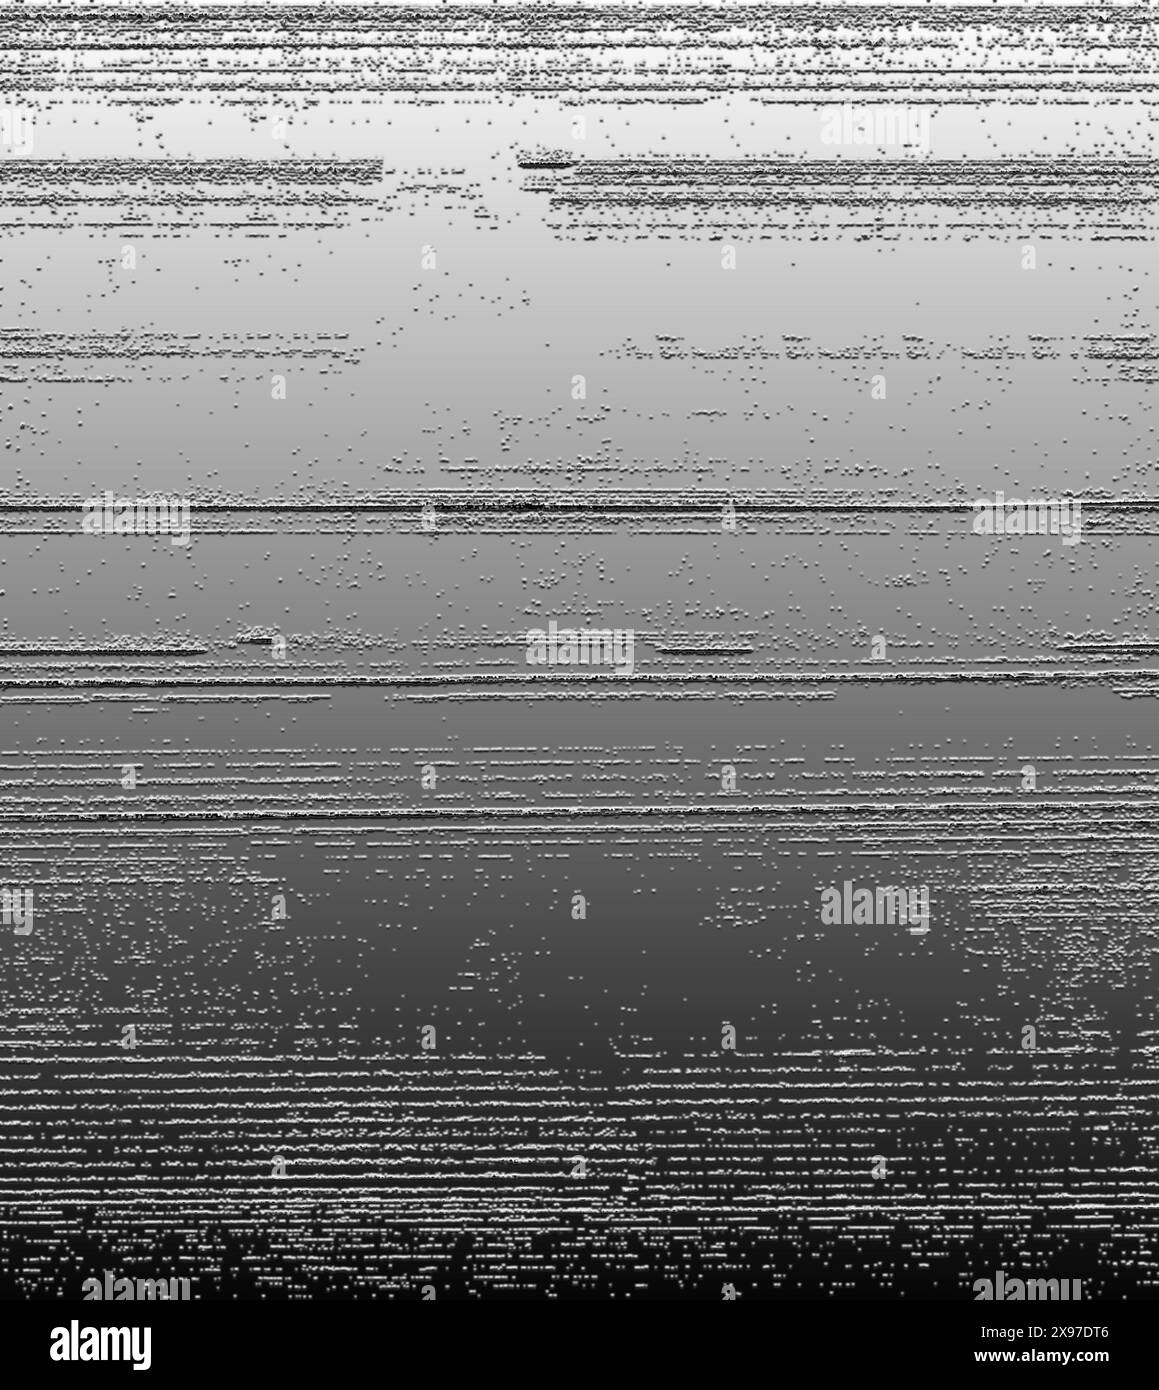 Grafica digitale astratta in bianco e nero con linee orizzontali e texture sfumata per un effetto minimalista Foto Stock